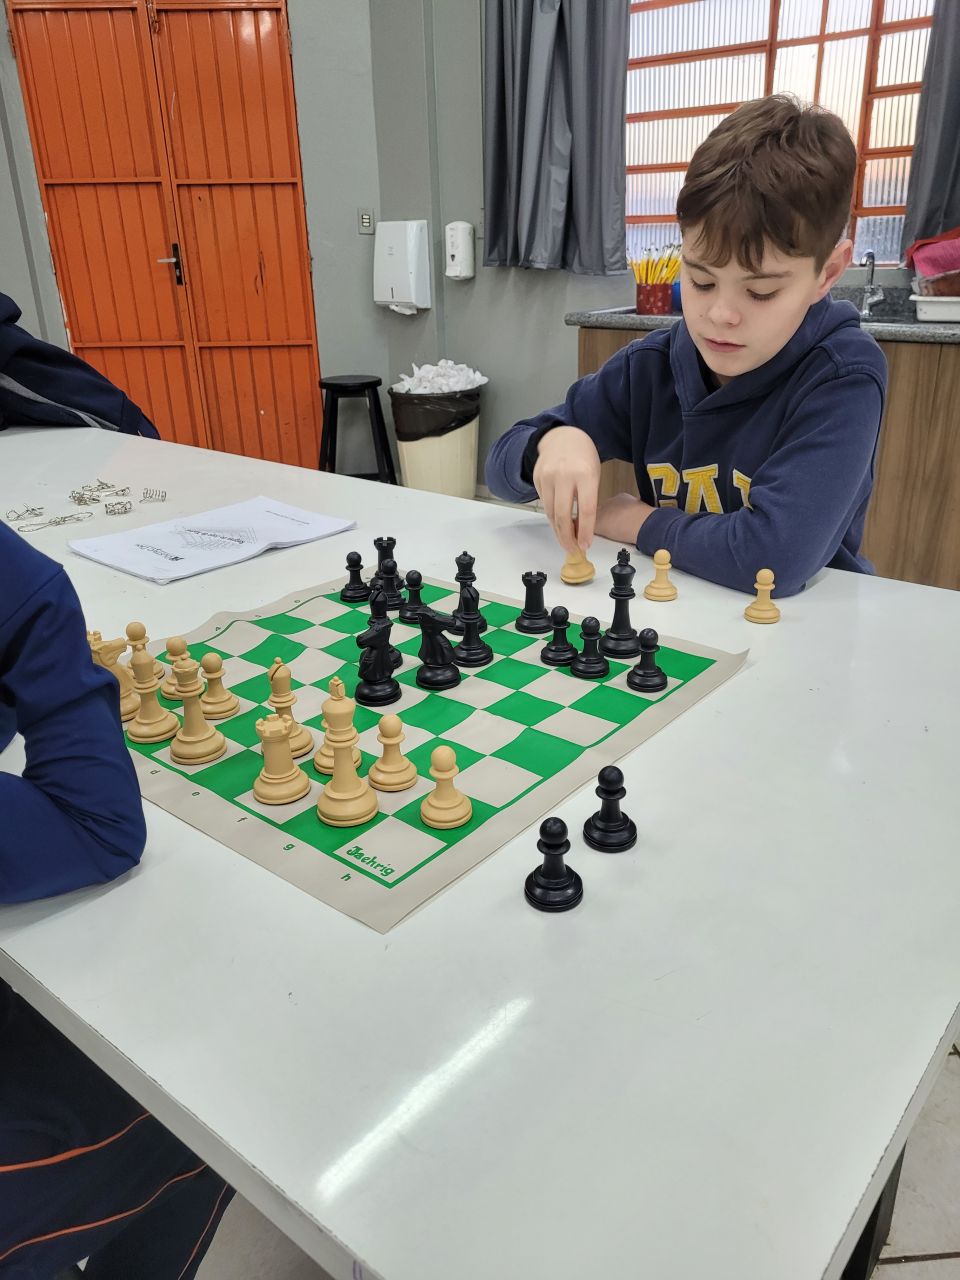 Xadrez incentiva a concentração e a elaboração de estratégias